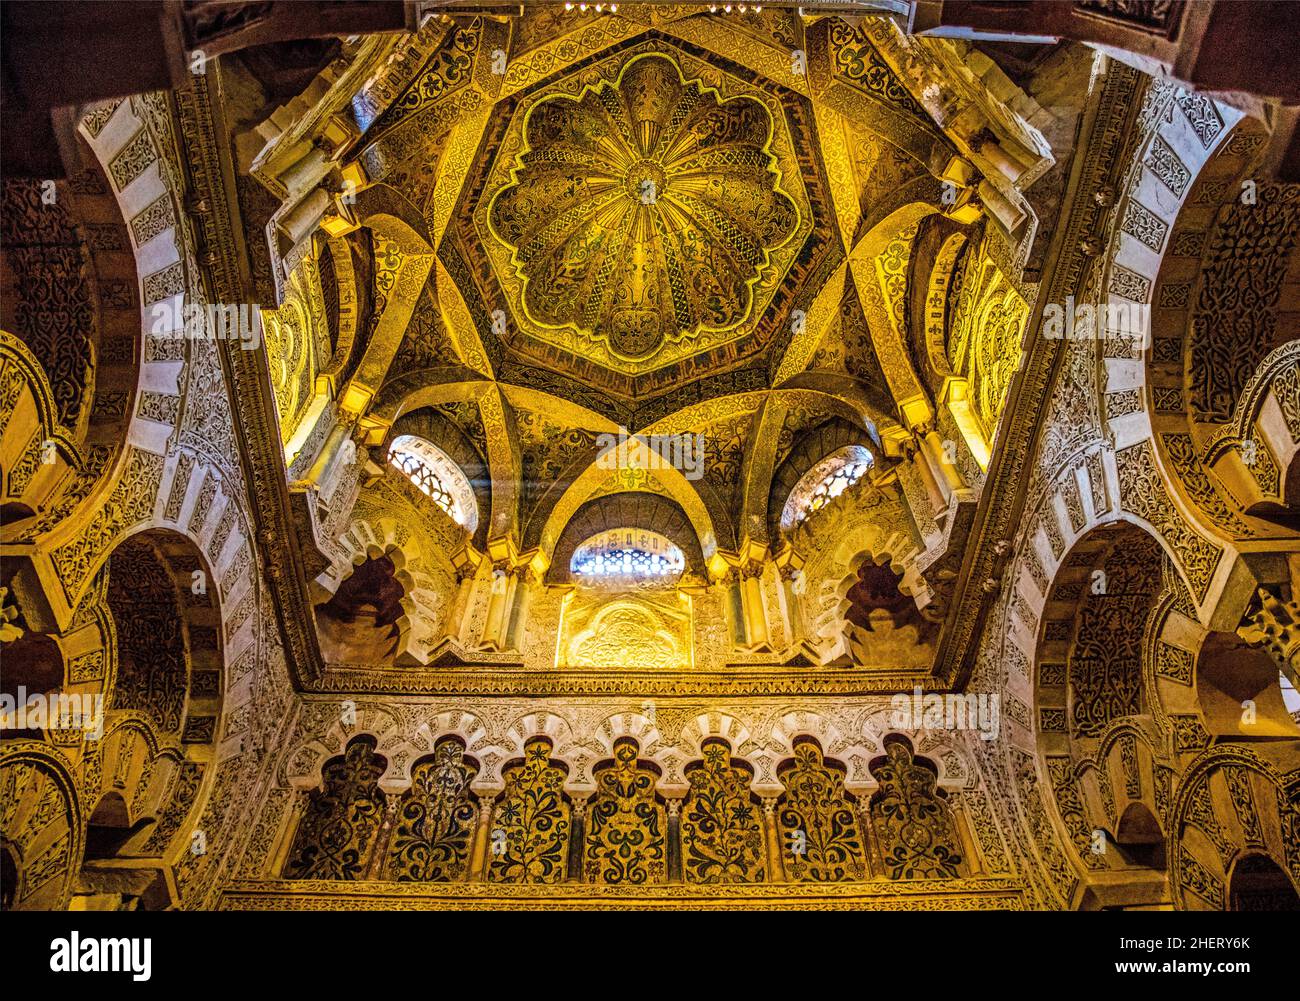 Dôme sur Mihrab, Mezquita, Cordoue, Cordoue, Andalousie,Espagne Banque D'Images